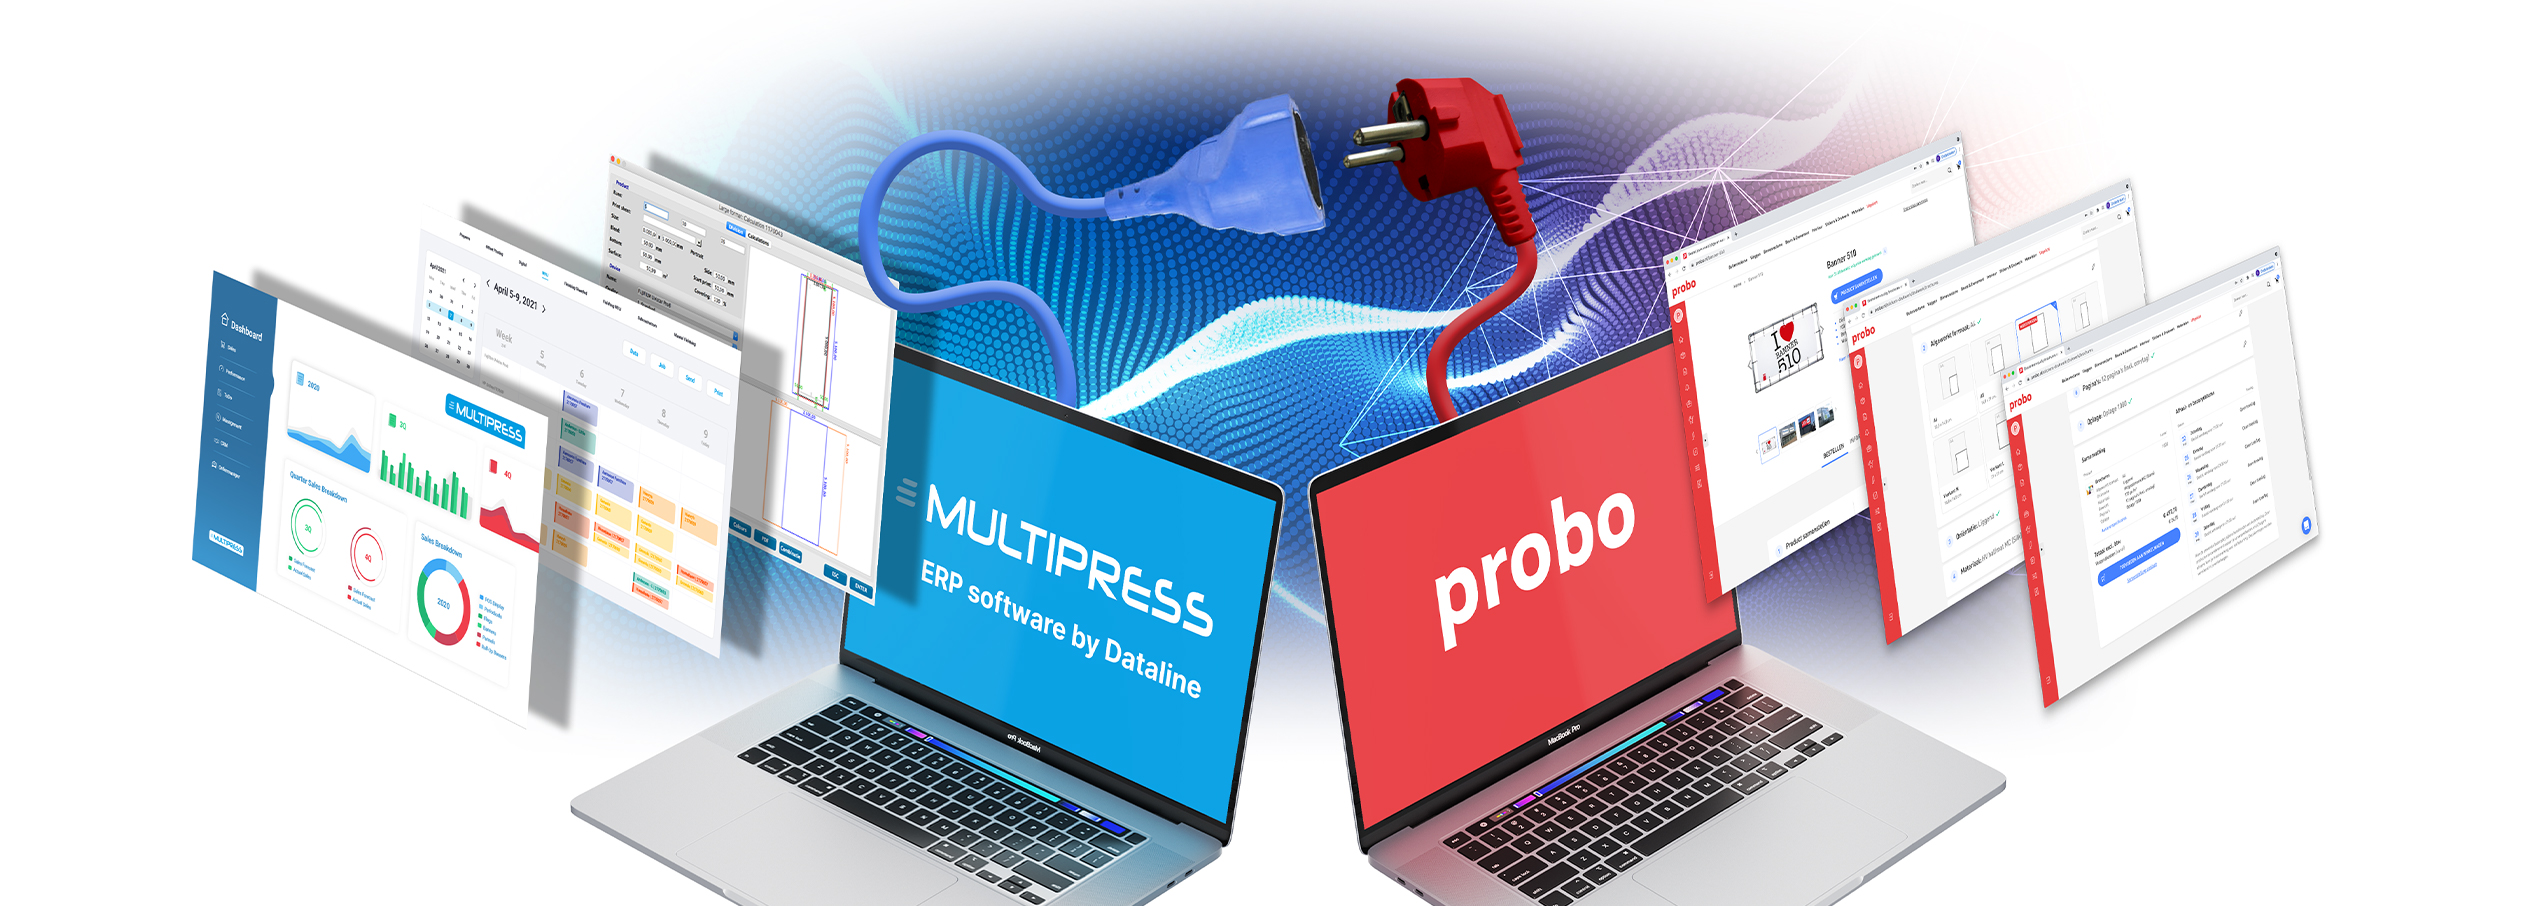 MultiPress-gebruikers kunnen rechtstreeks bij Probo bestellen